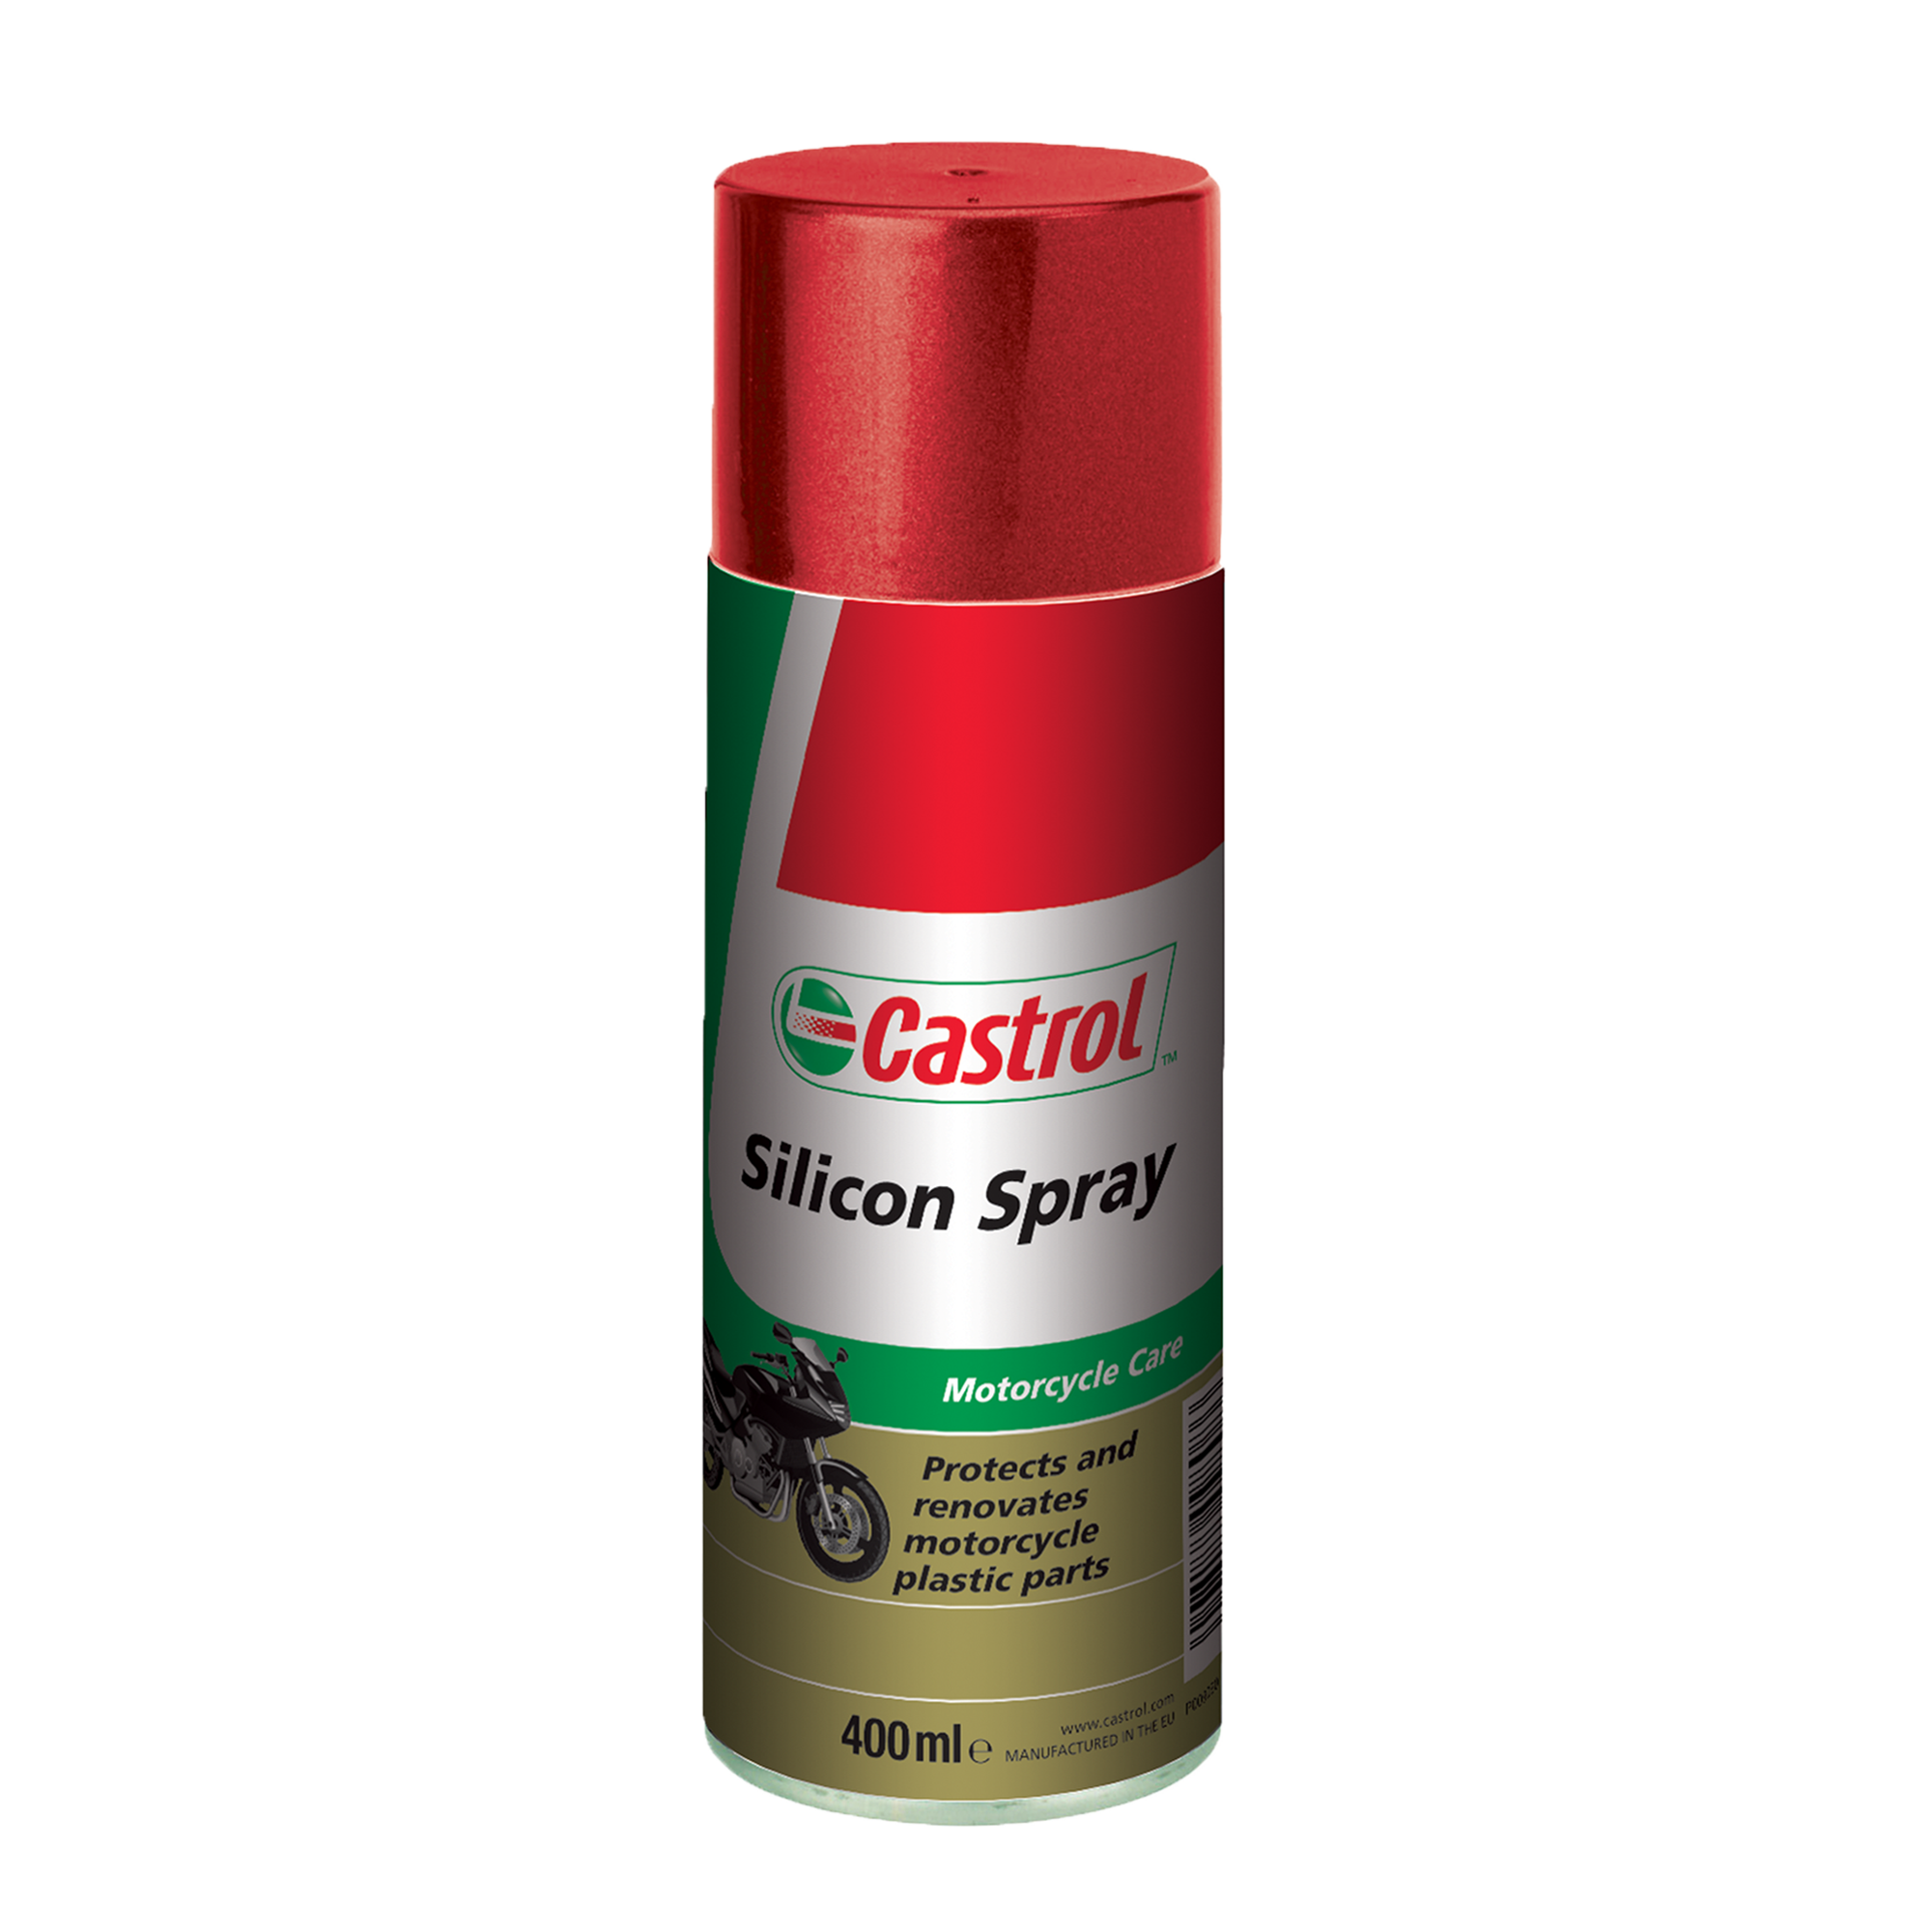 15516B-400ML Castrol Silicon Spray is een smeermiddel in de vorm van een spray op basis van siliconen die een beschermende waterafstotende glanzende laag aanbrengt.